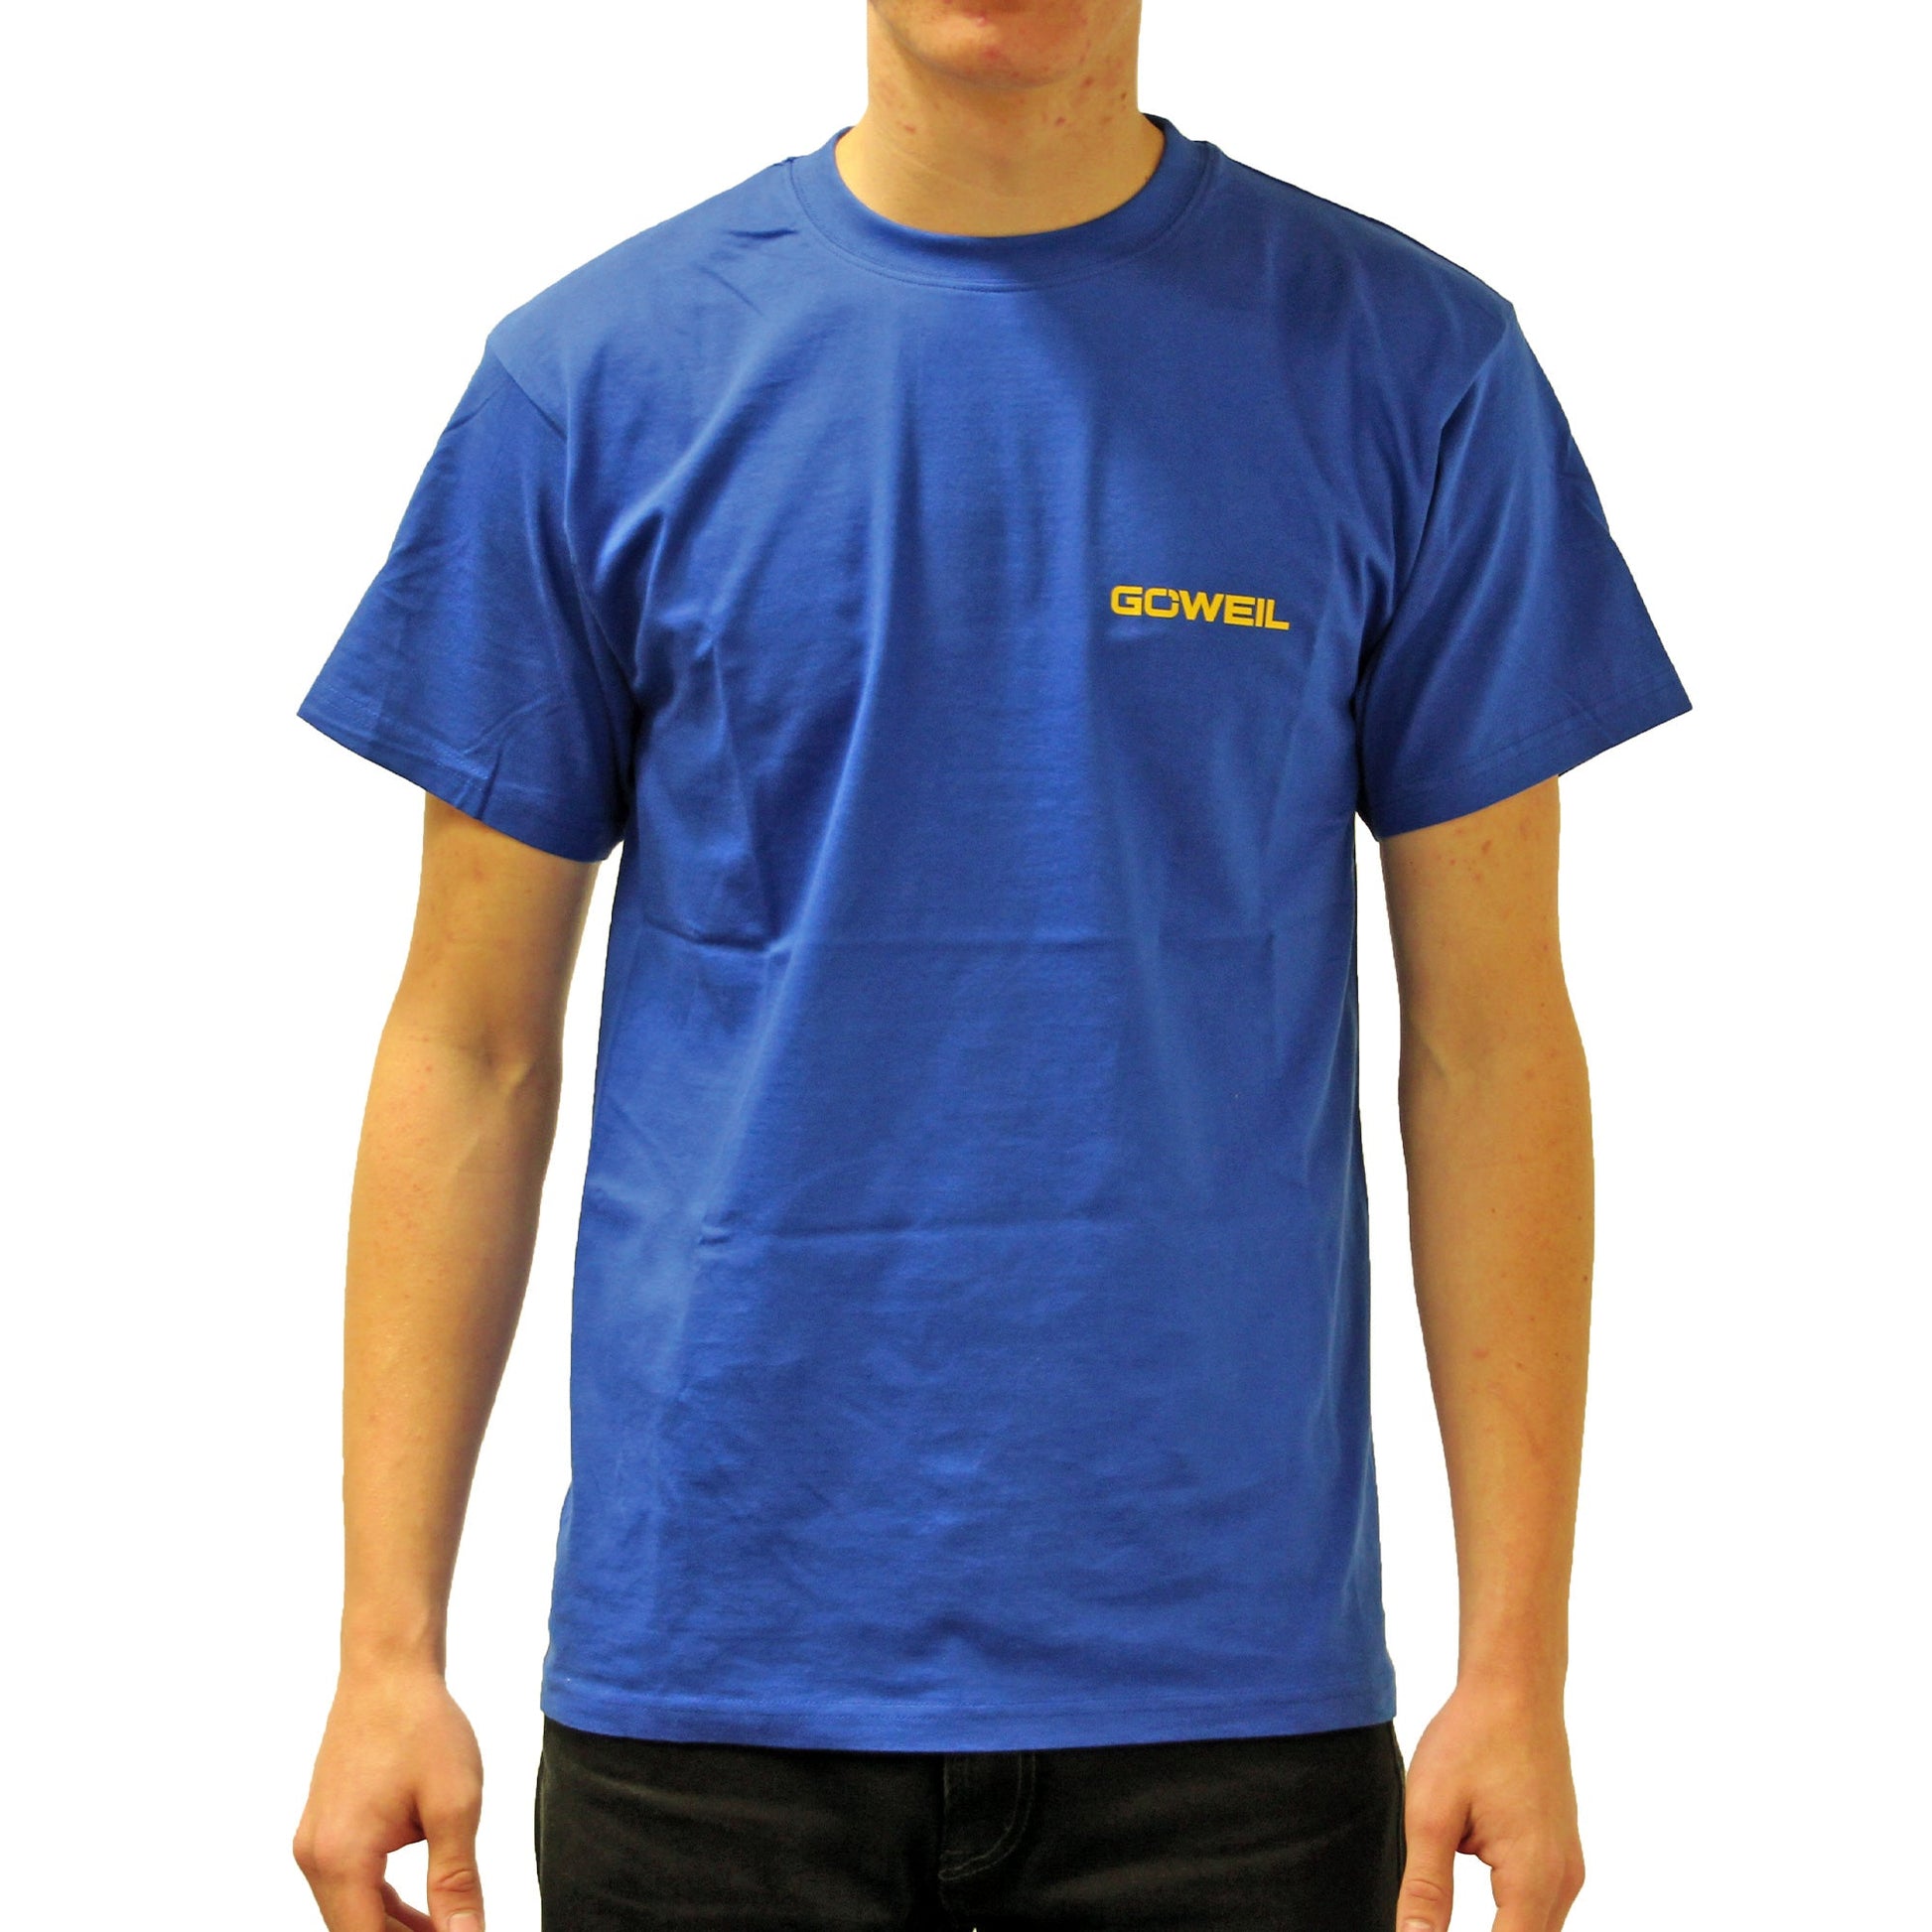 GÖWEIL T-Shirt für Kinder in blau